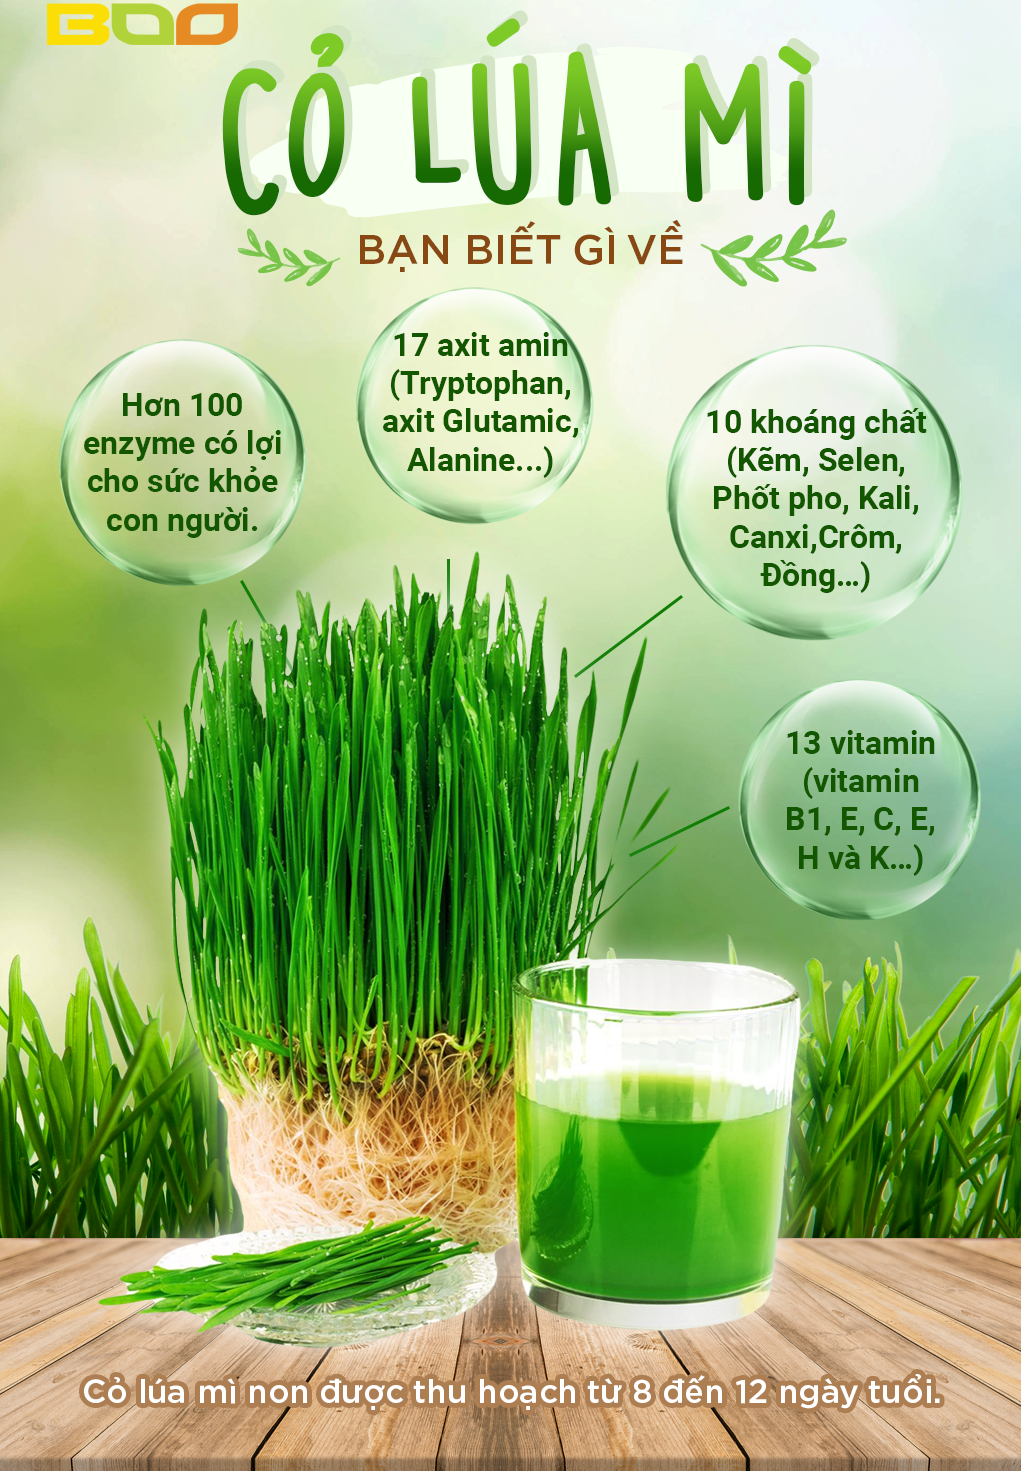 Bột cỏ lúa mì bổ sung diệp lục tố - hỗ trợ phòng ngừa tiểu đường - hỗ trợ tiêu hóa giảm táo bón - thải độc gan và máu hiệu quả - gói 3g dùng thử